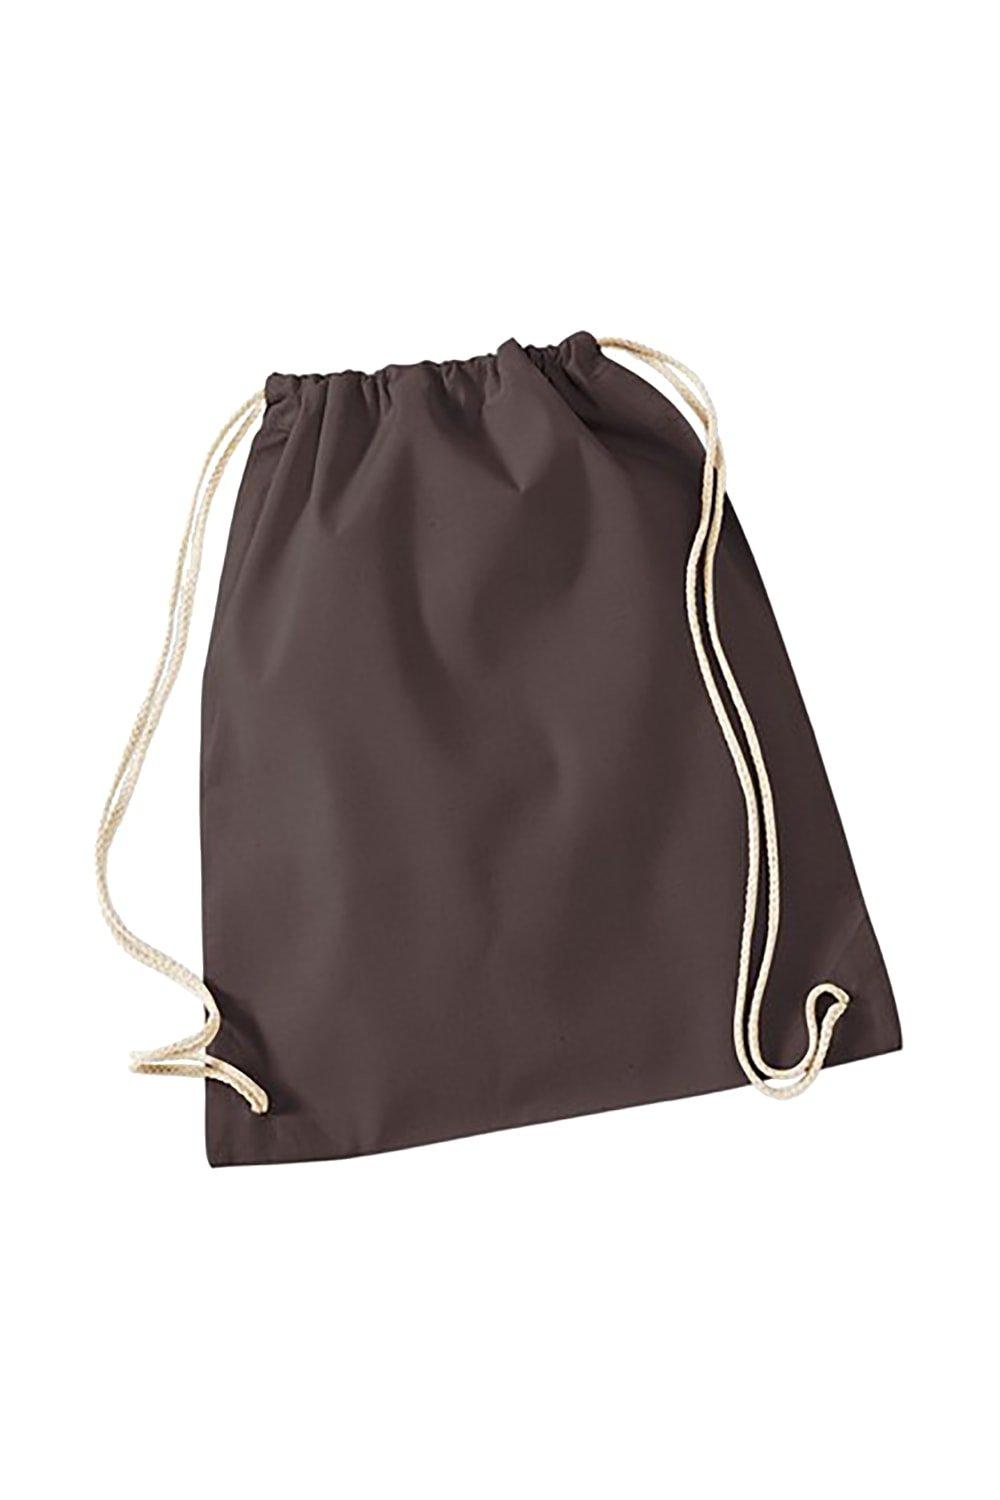 цена Хлопковая сумка Gymsac - 12 литров (2 шт. в упаковке) Westford Mill, коричневый